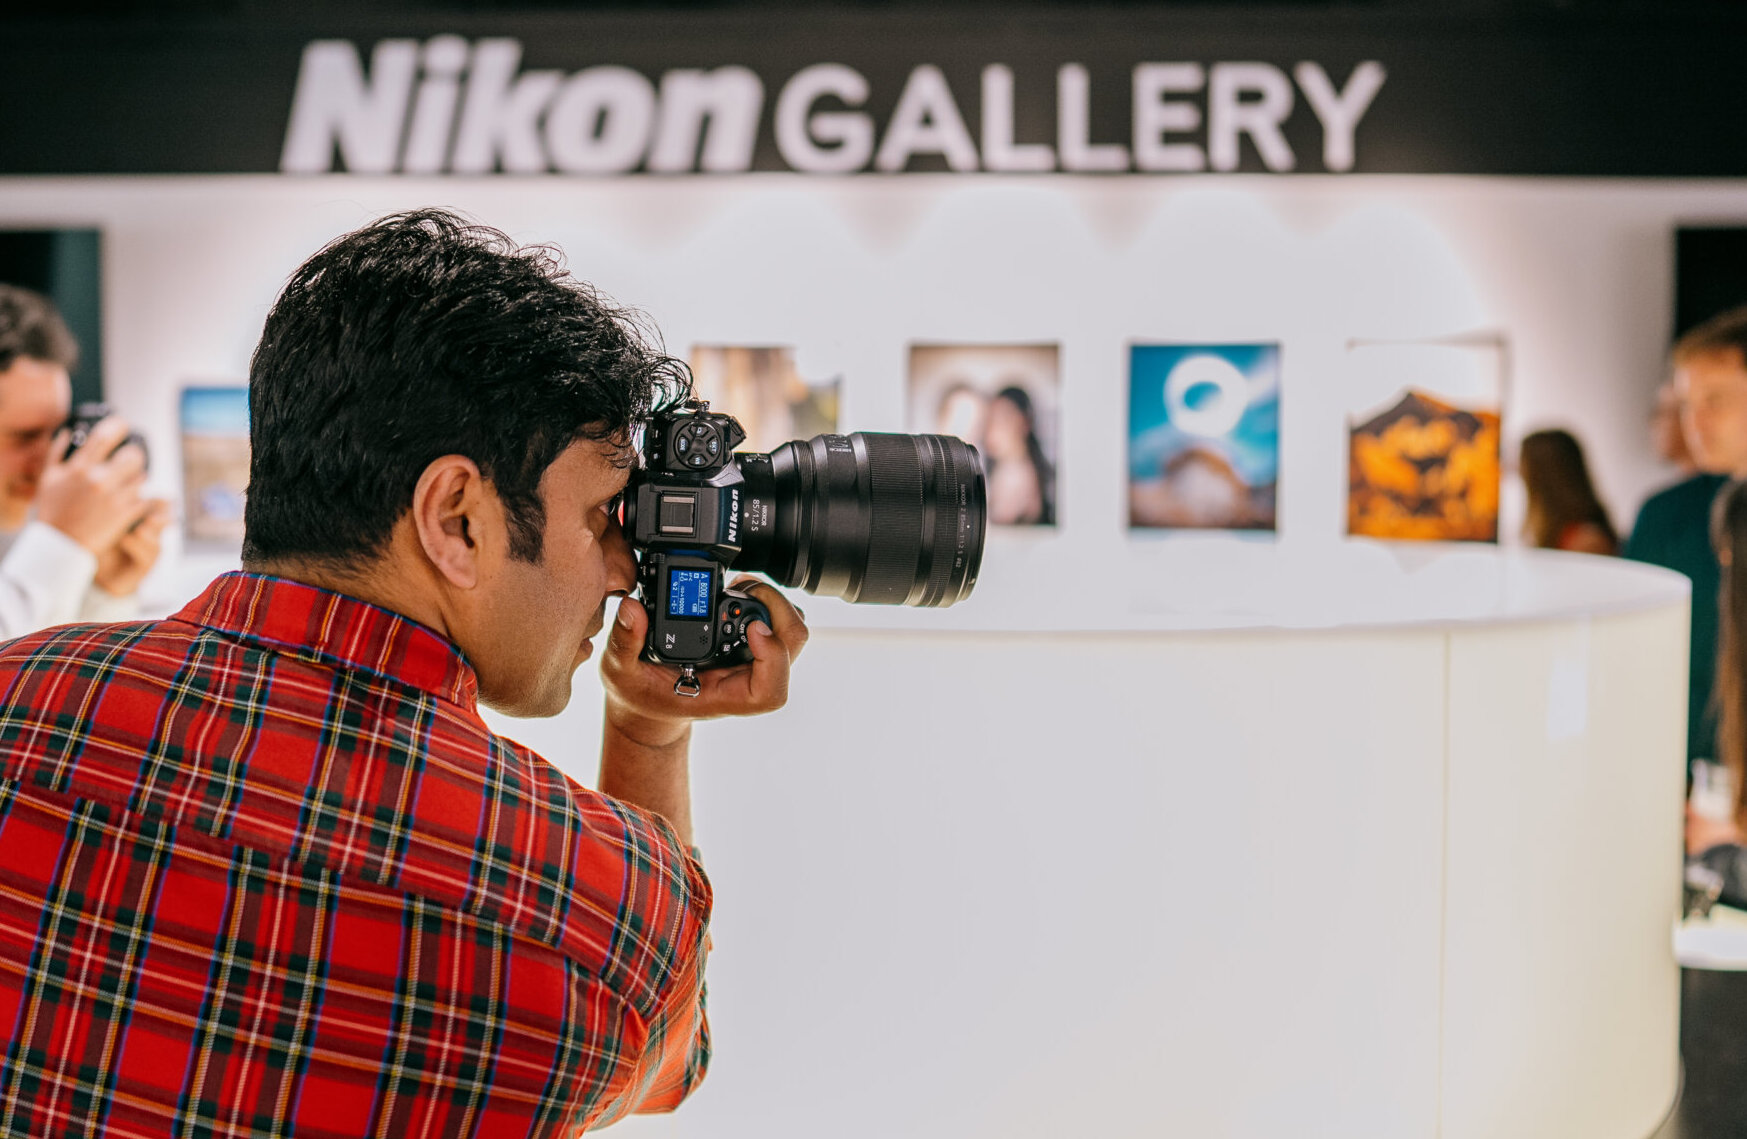 Nikon Gallery, 2023